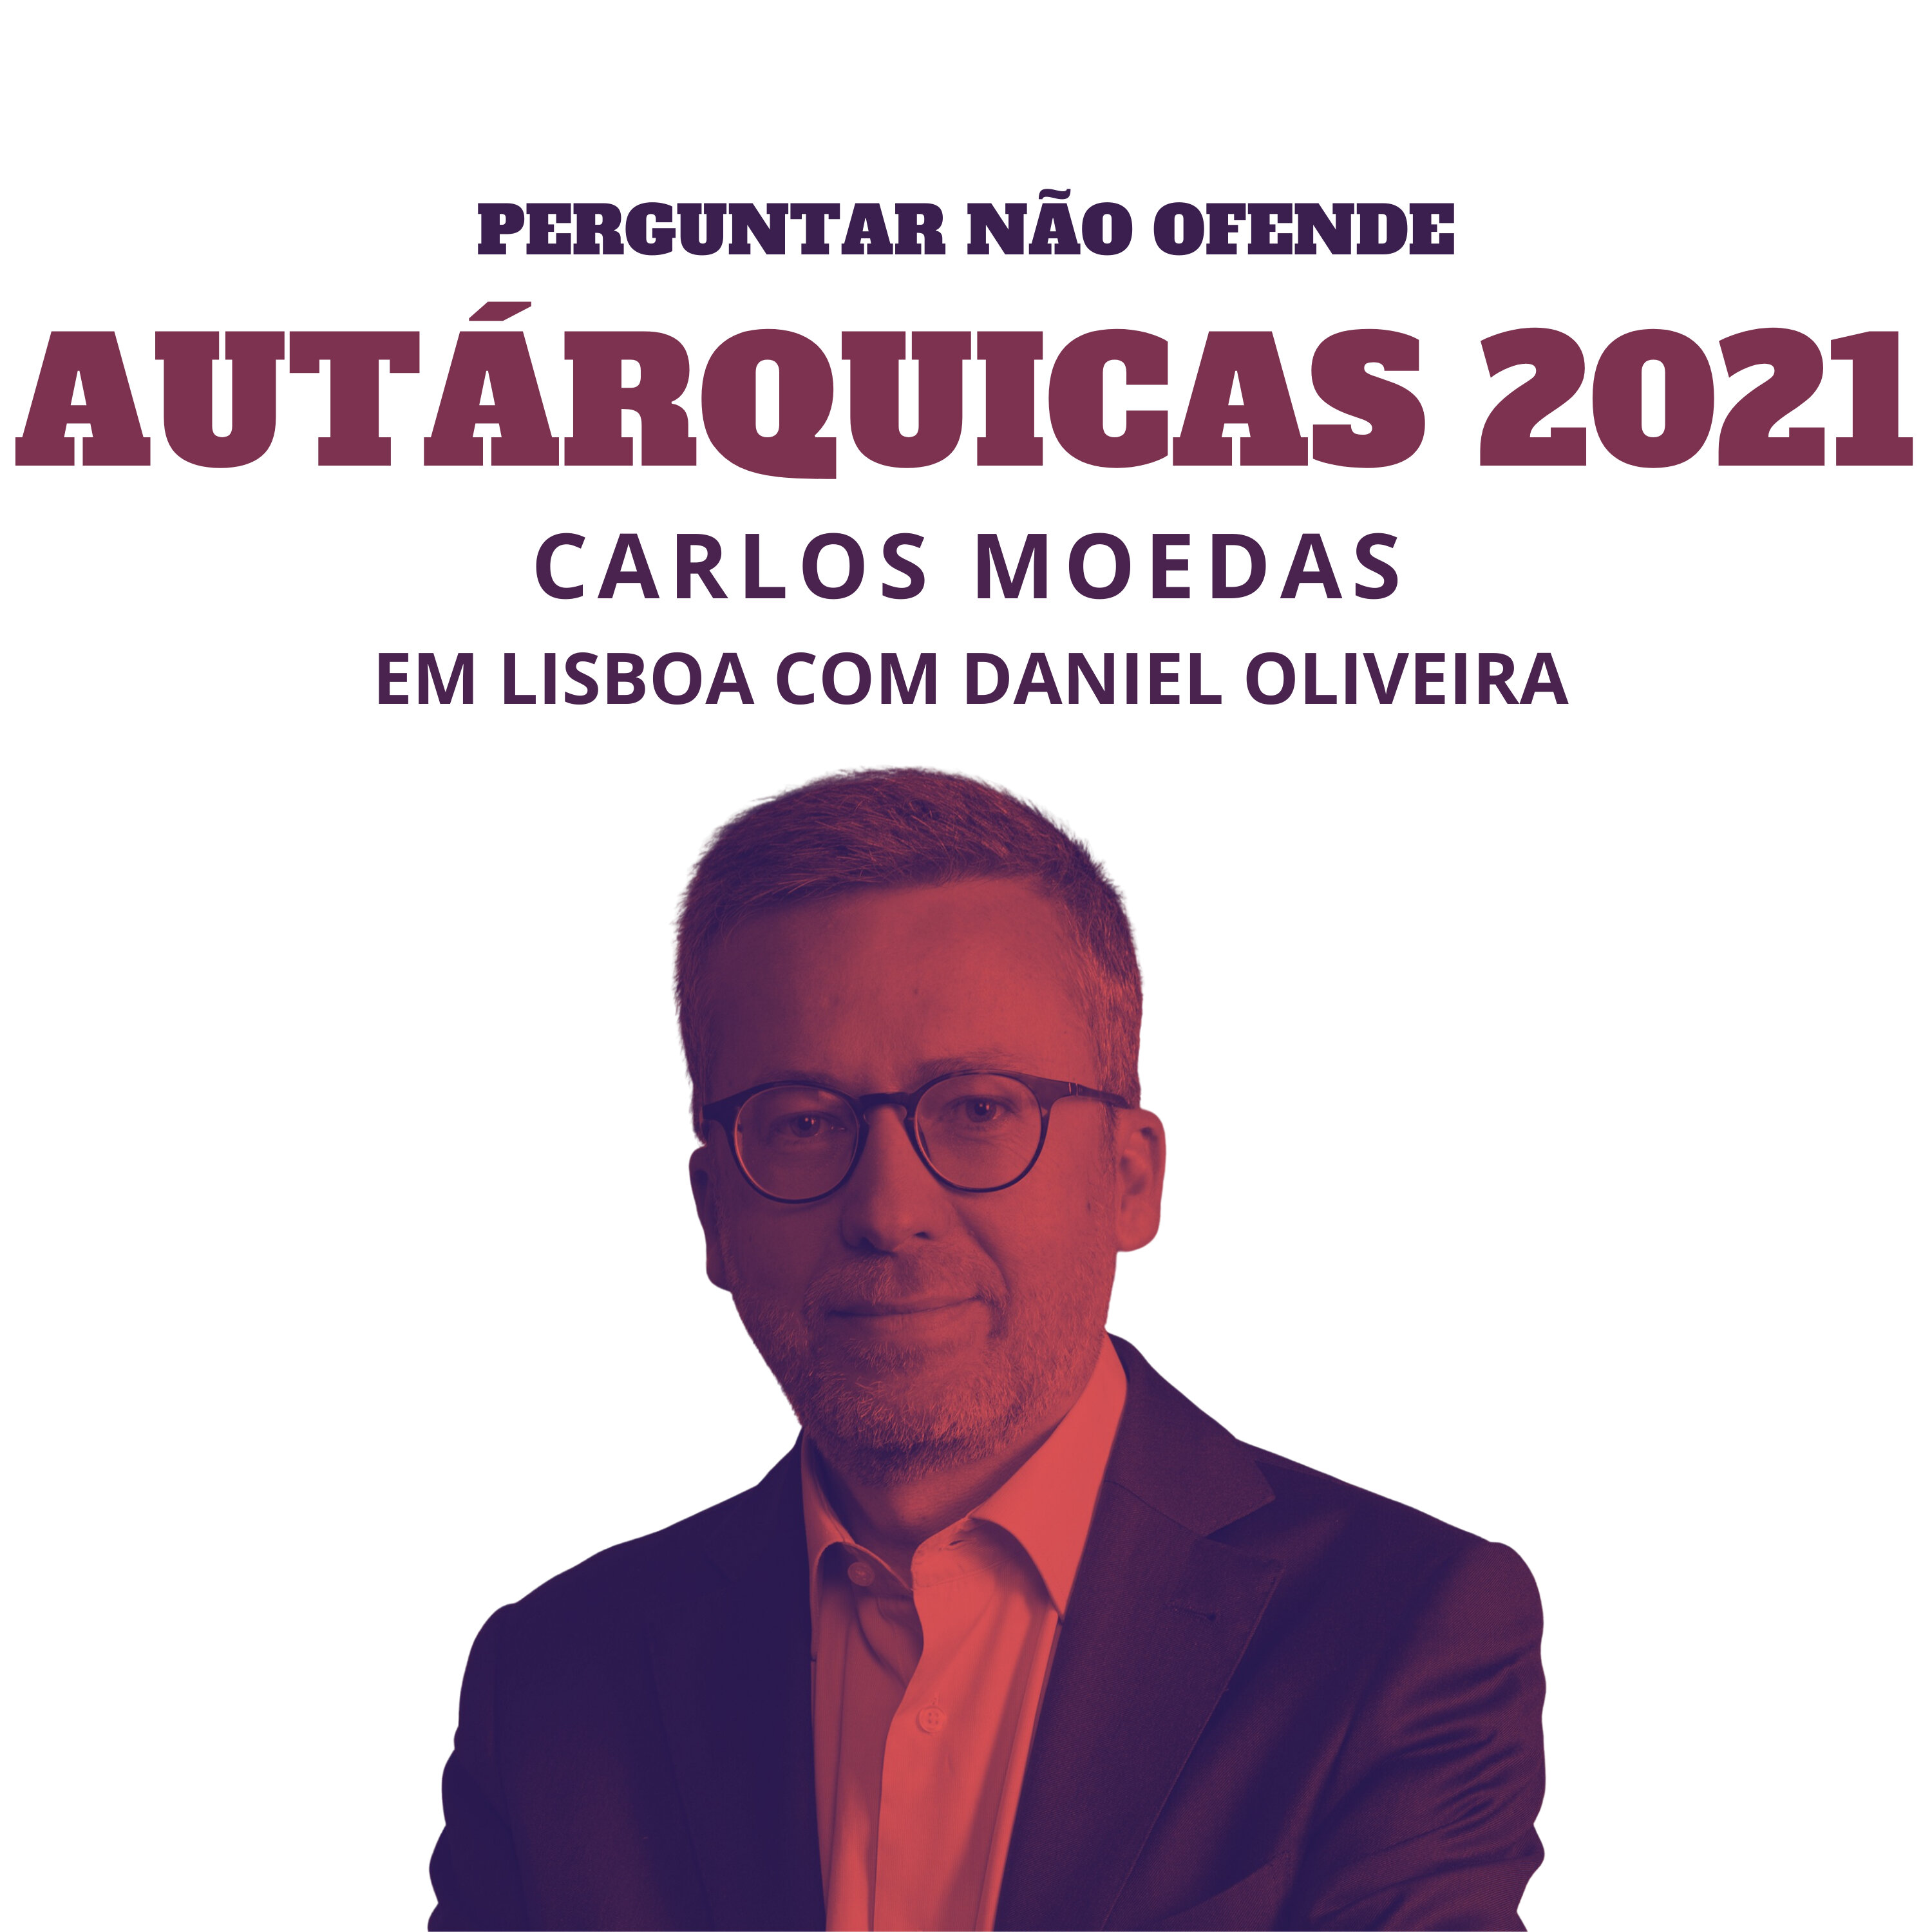 Autárquicas 2021: Carlos Moedas conversa com Daniel Oliveira, em Lisboa